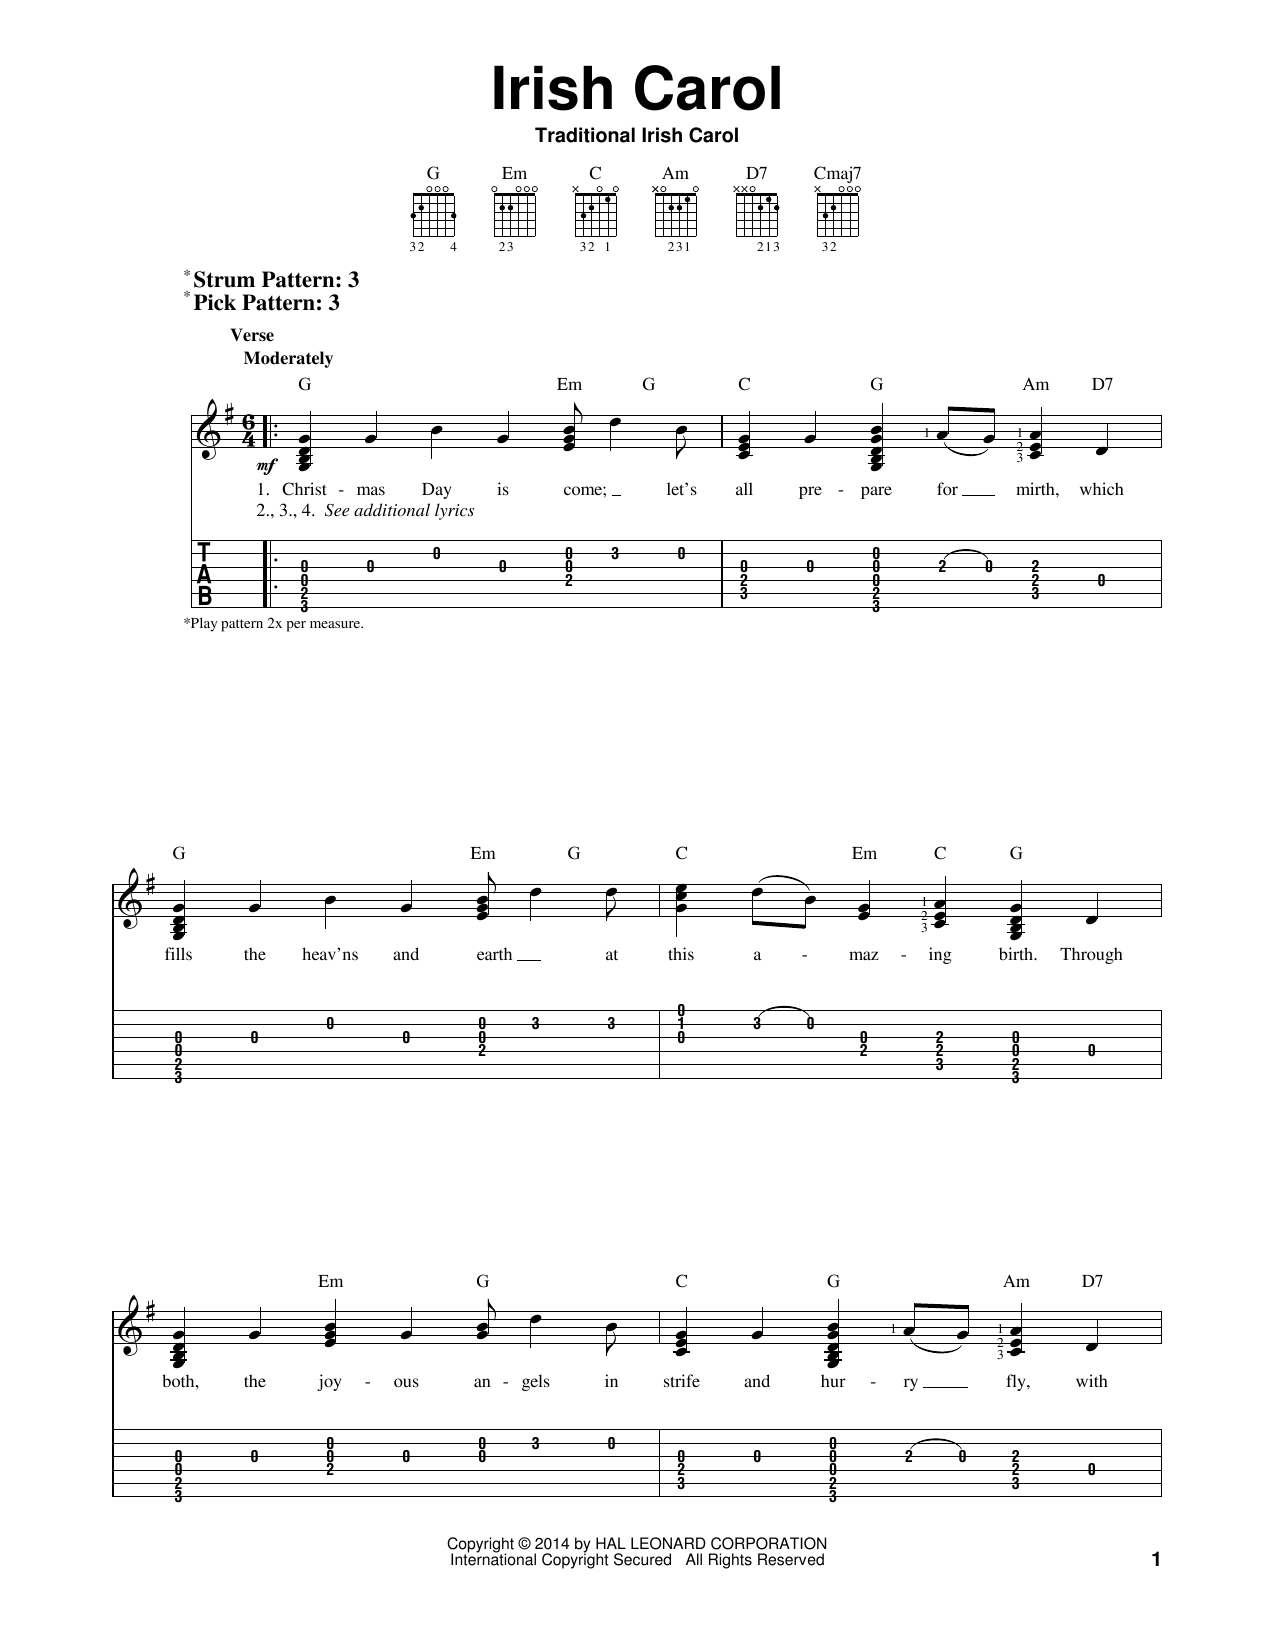 Traditional Irish Carol Irish Carol Sheet Music Notes & Chords for Ukulele with strumming patterns - Download or Print PDF